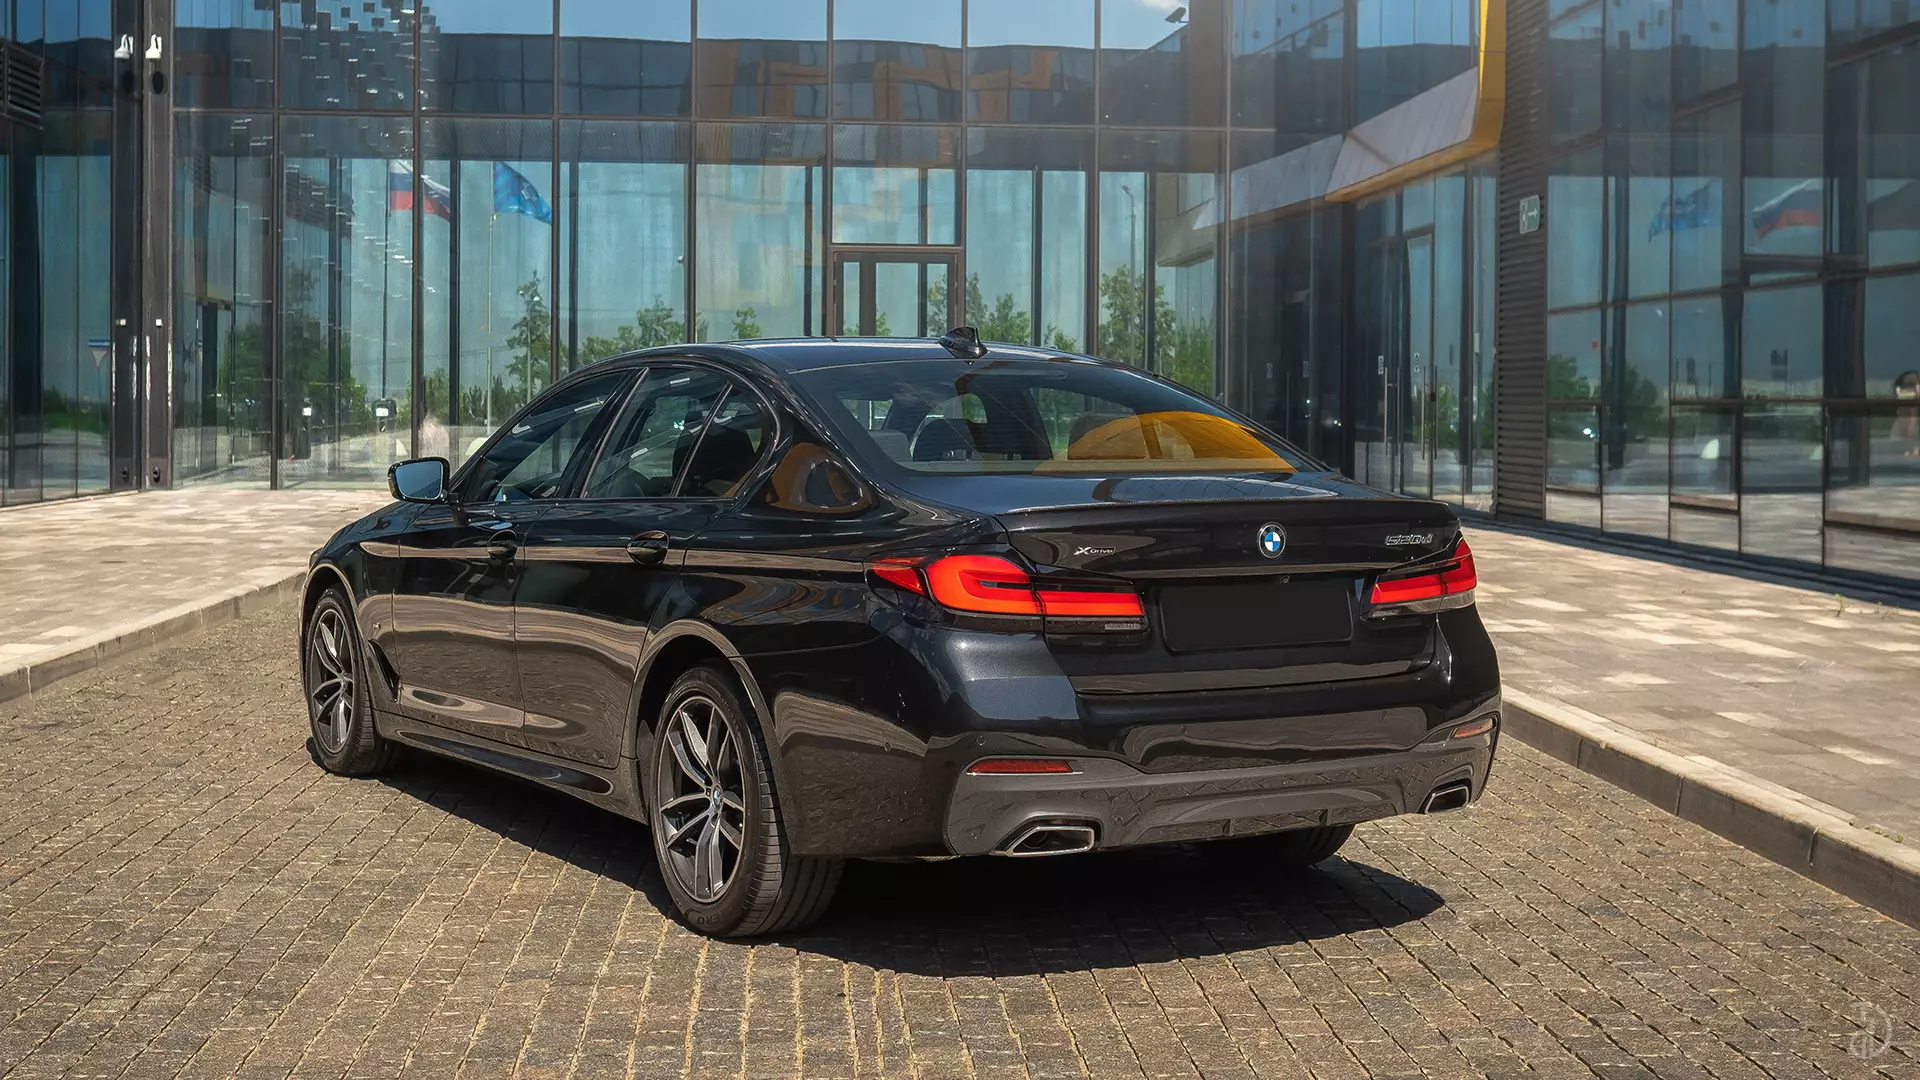 Аренда BMW 520d G30 в Санкт-Петербурге.